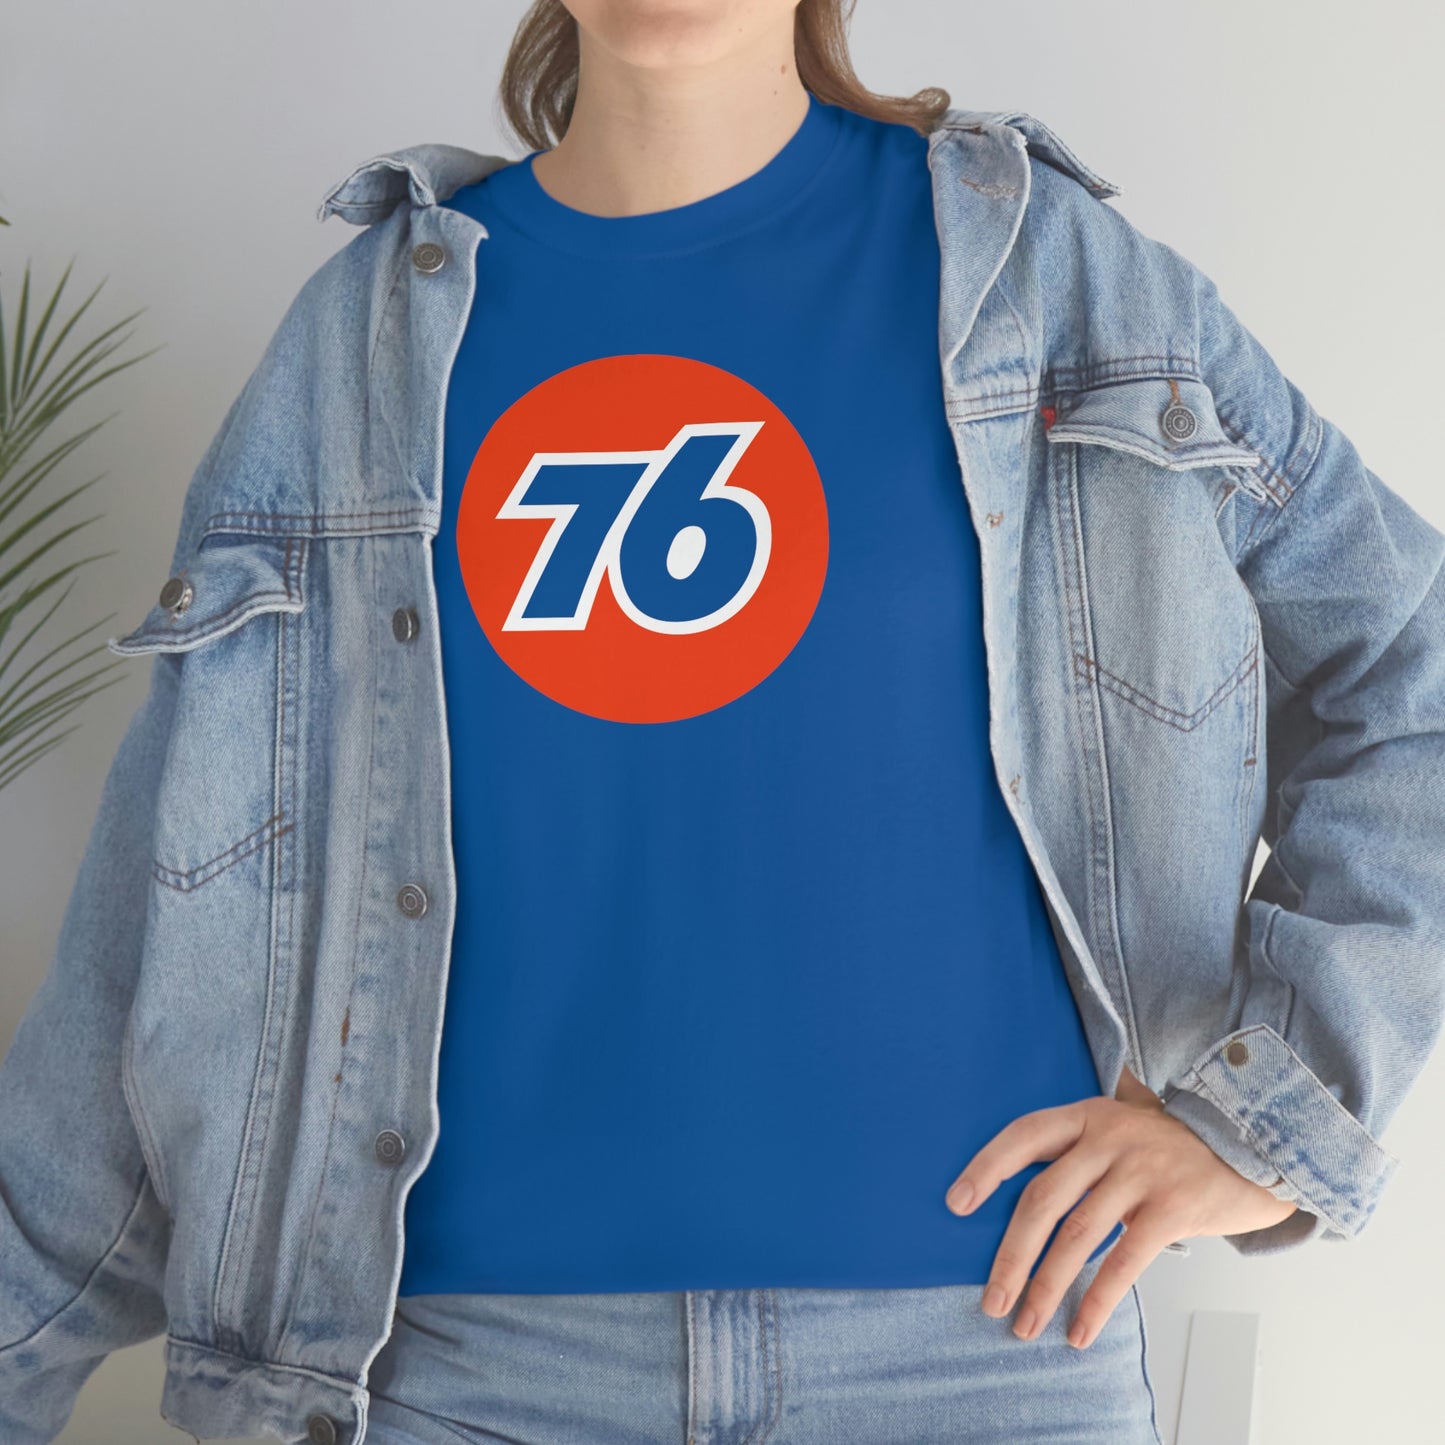 76 T-Shirt